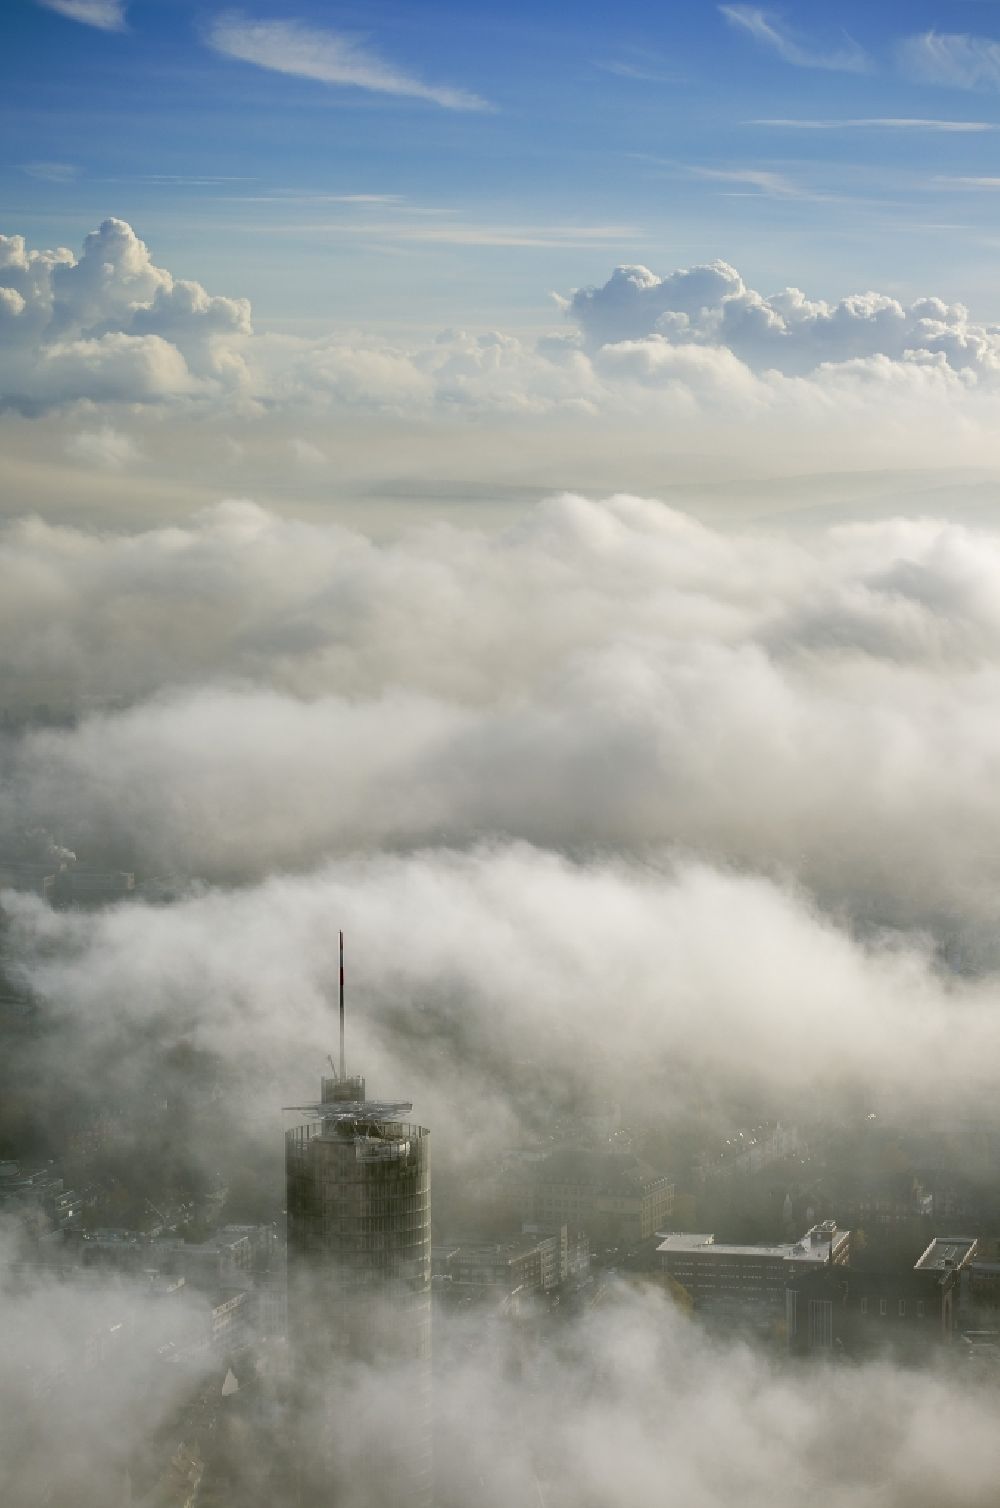 Luftbild Essen - Die Spitze des RWE- Turm Essen durchbricht eine imposante Nebel- und Wolkendecke über der Innenstadt im Bundesland Nordrhein-Westfalen